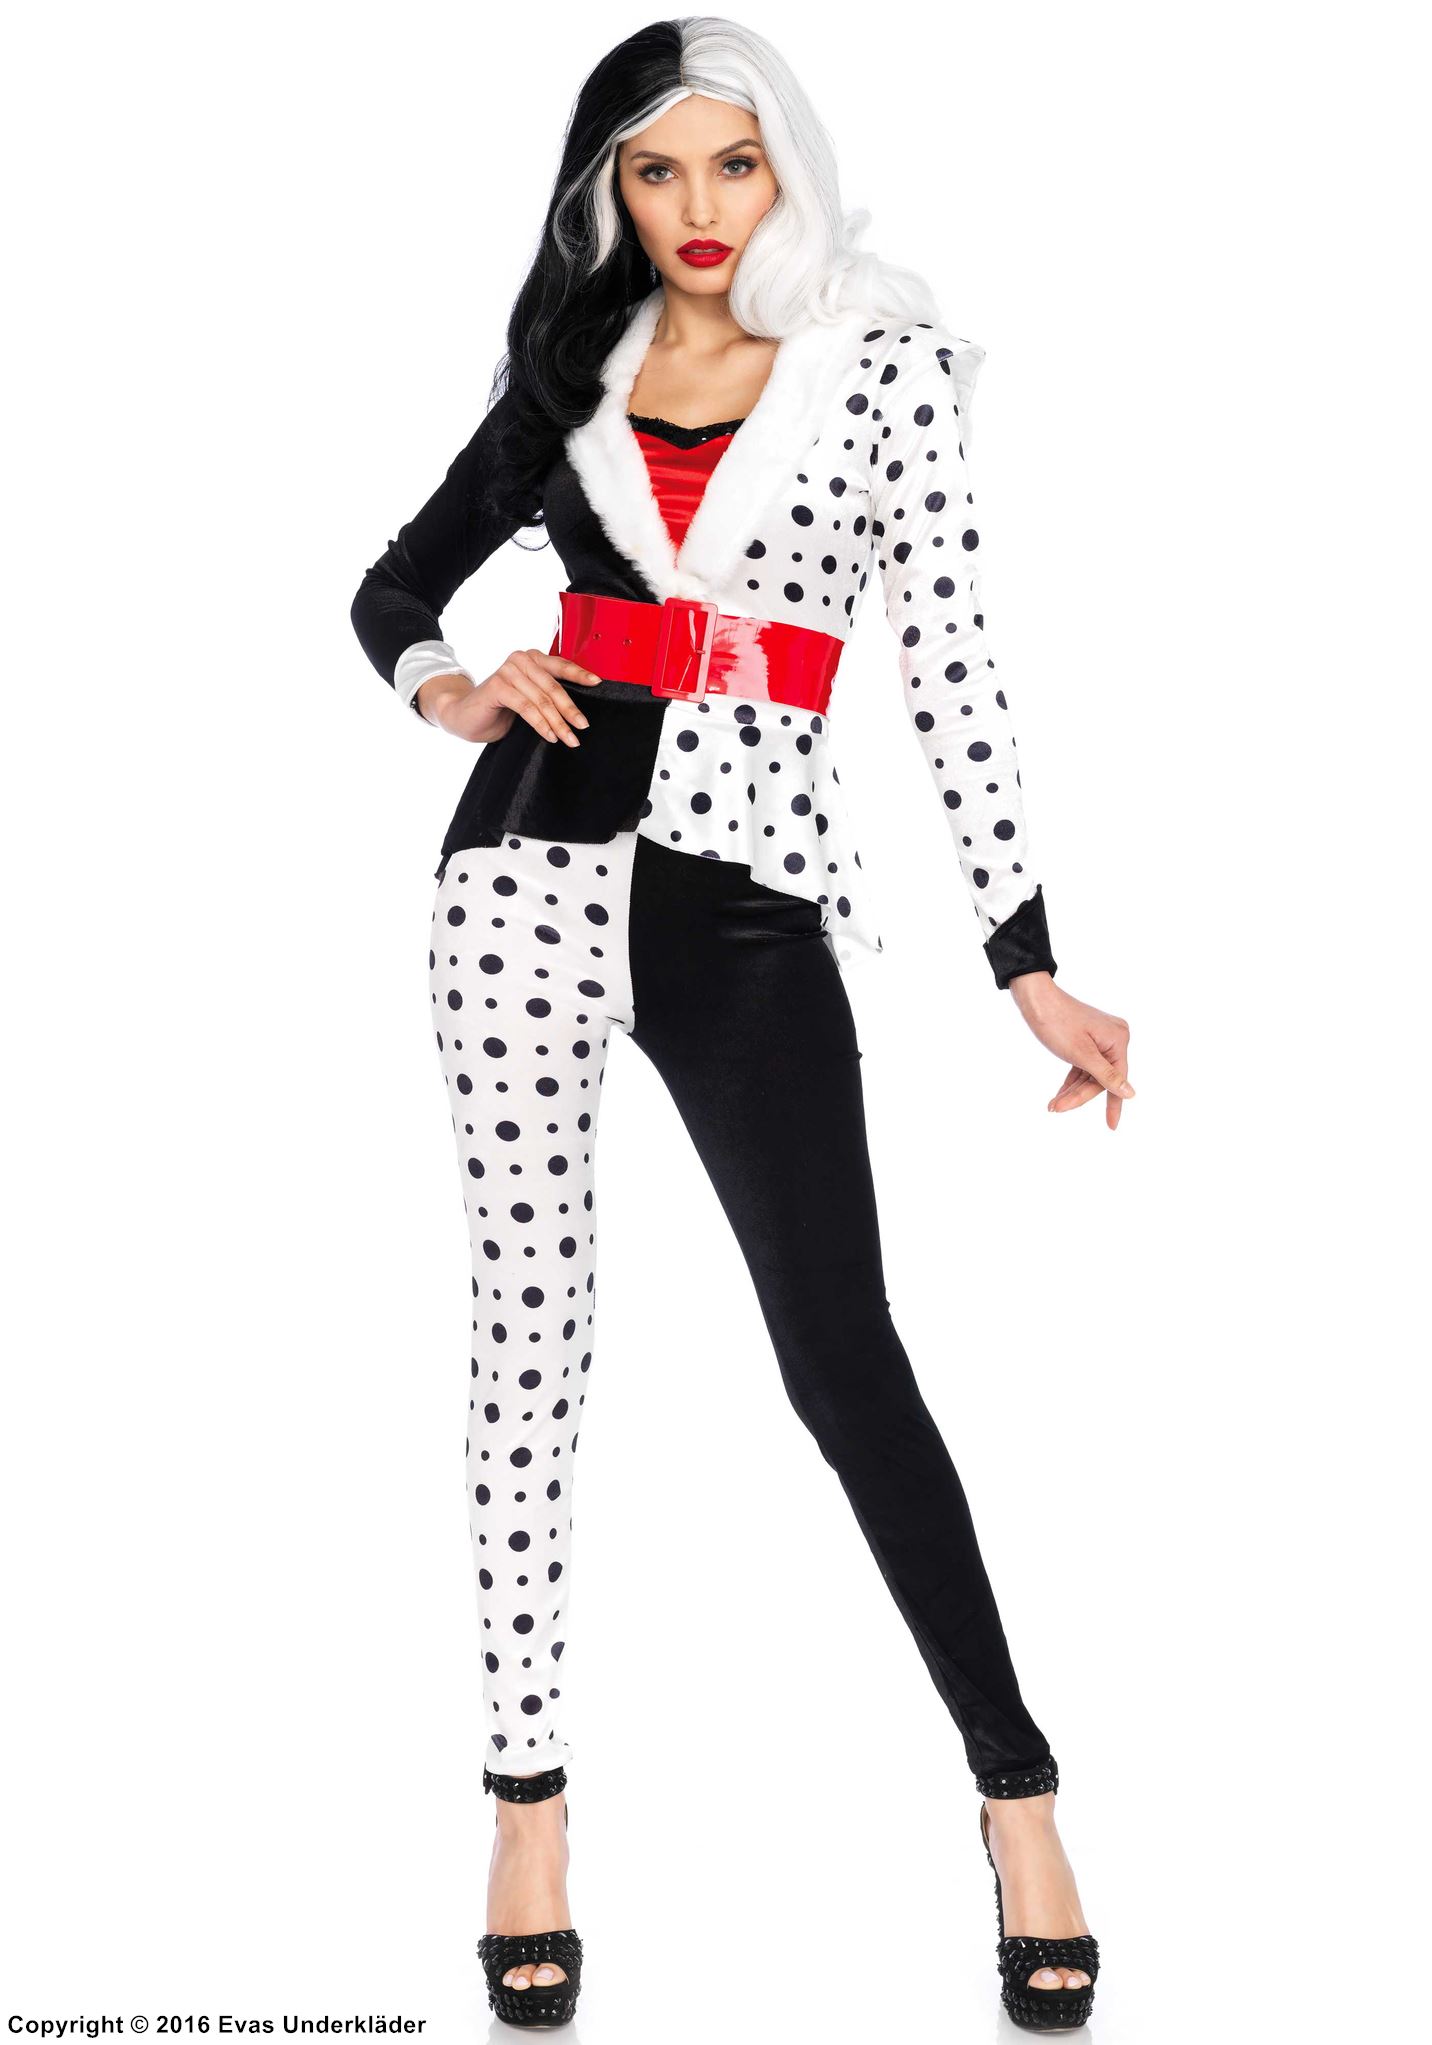 Cruella de Vil, top and pants costume, faux fur, polka dot